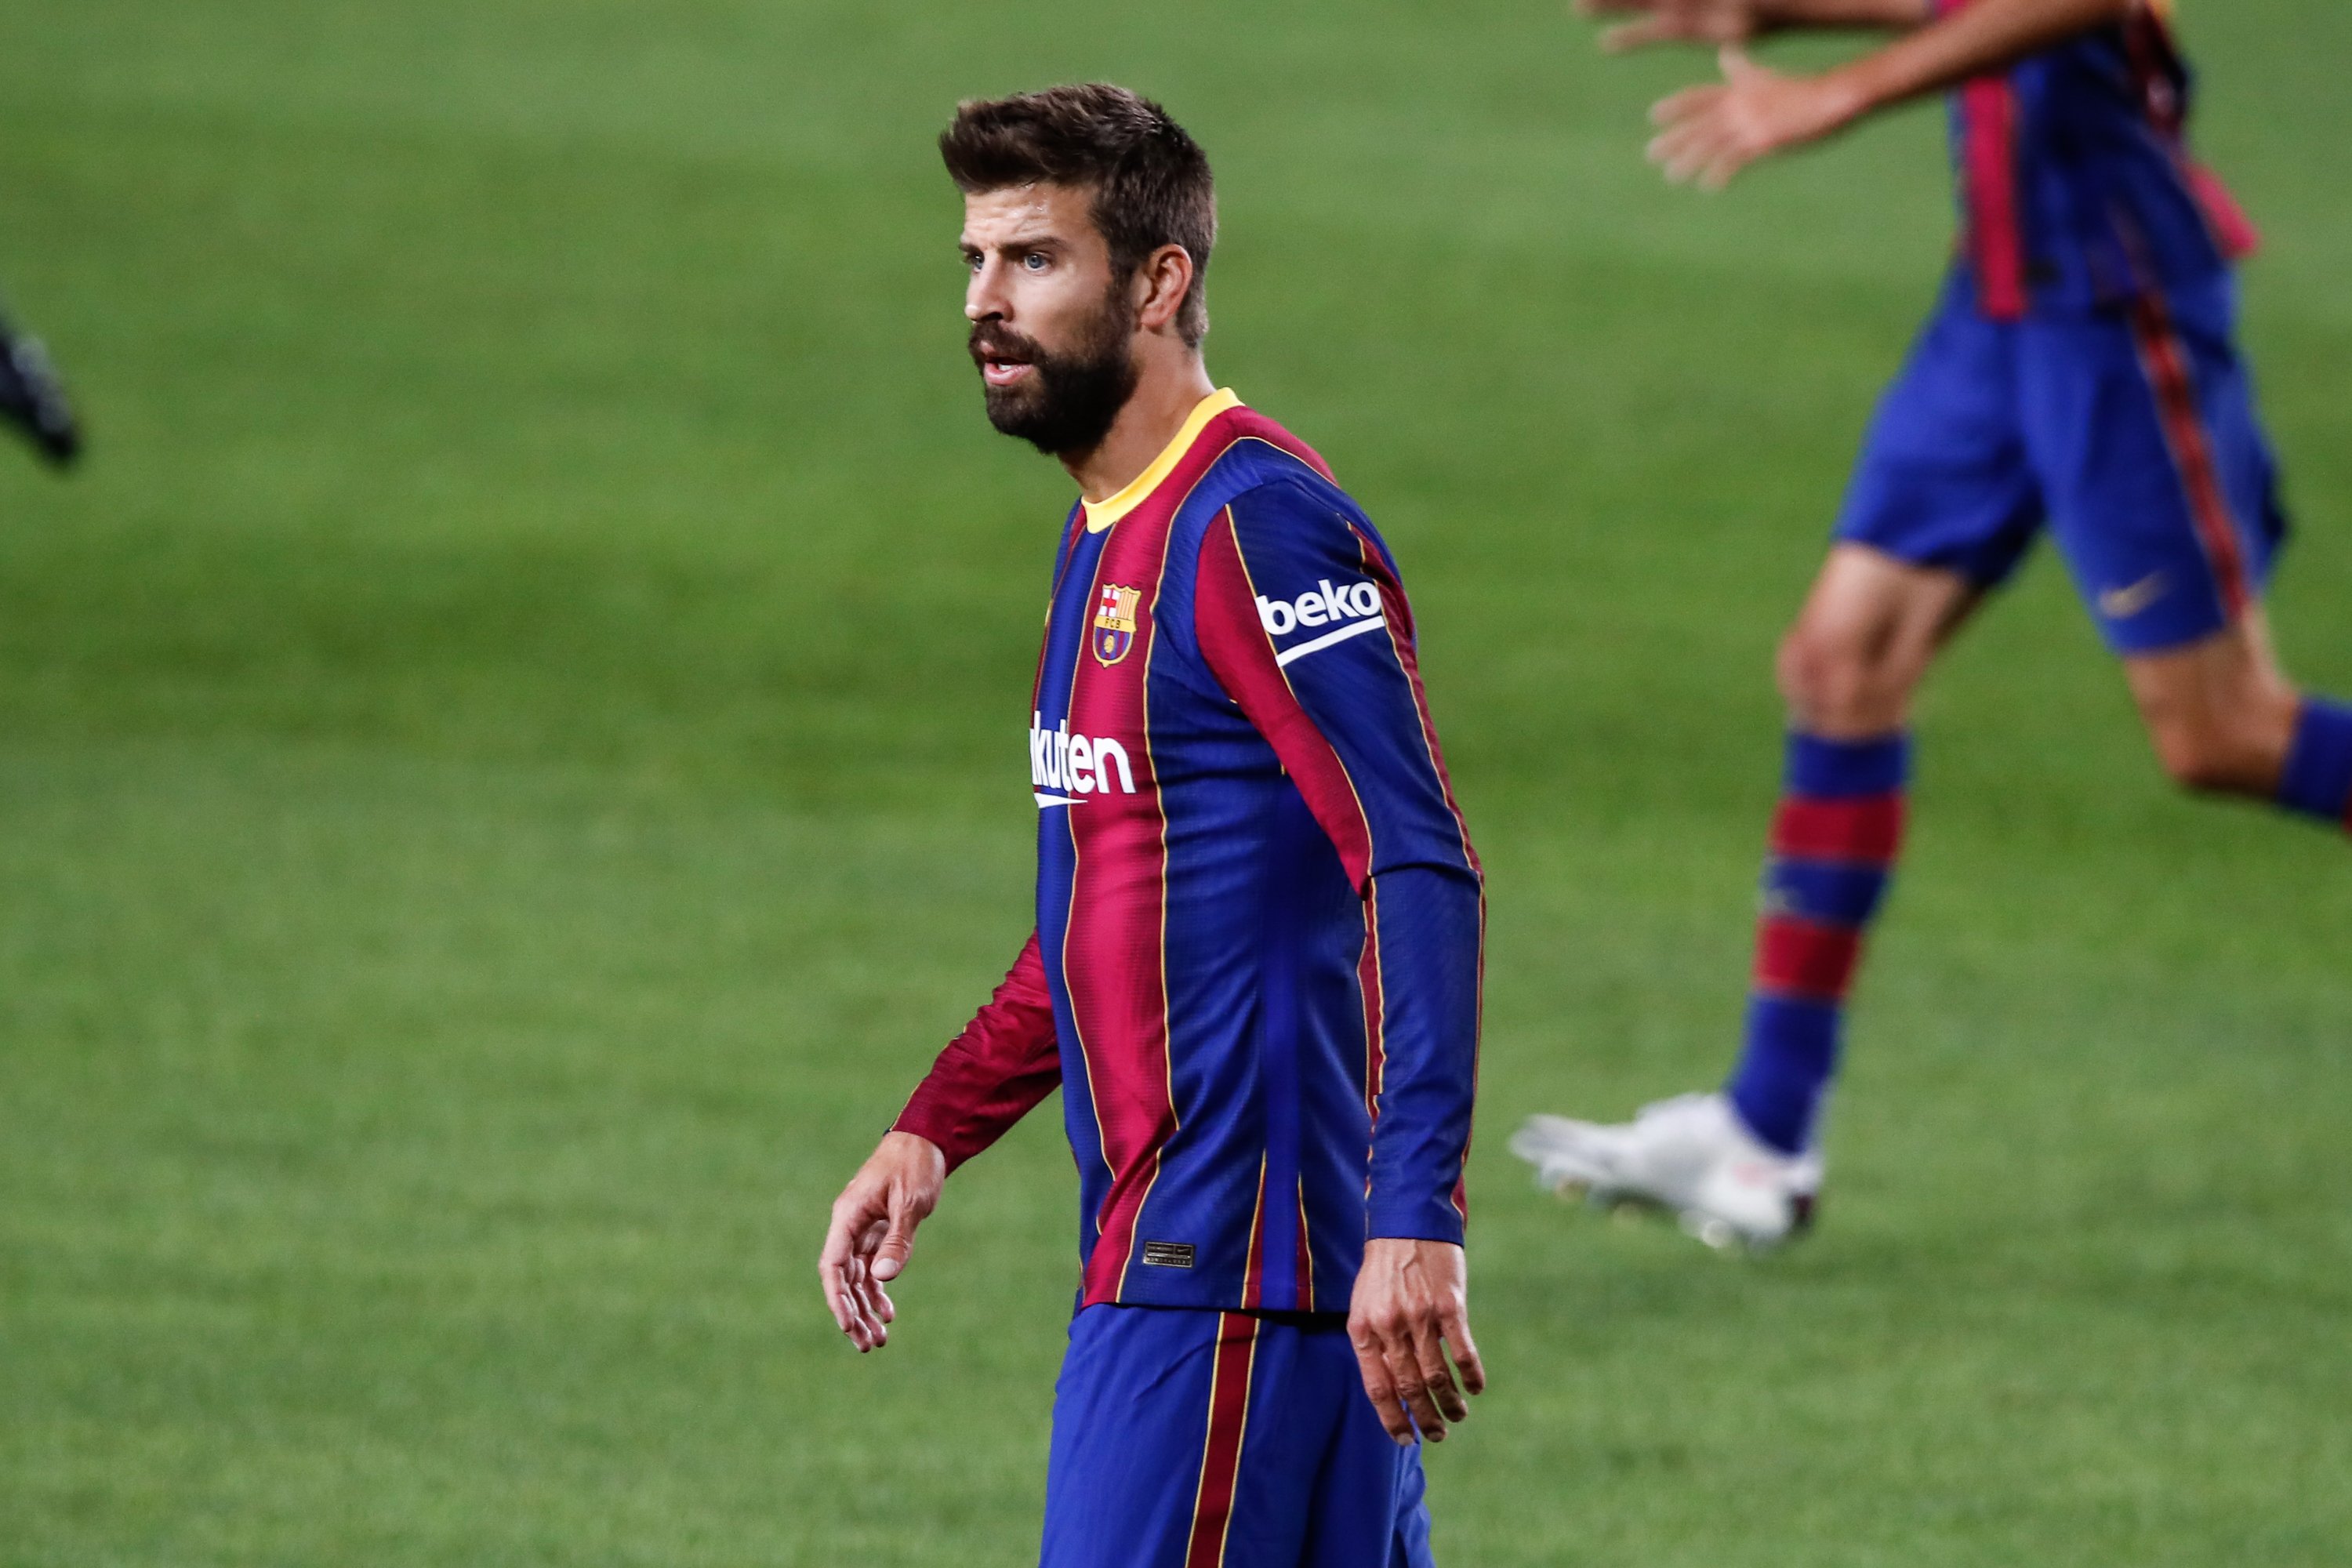 Más problemas en el Barça: Beko pagará menos por su patrocinio